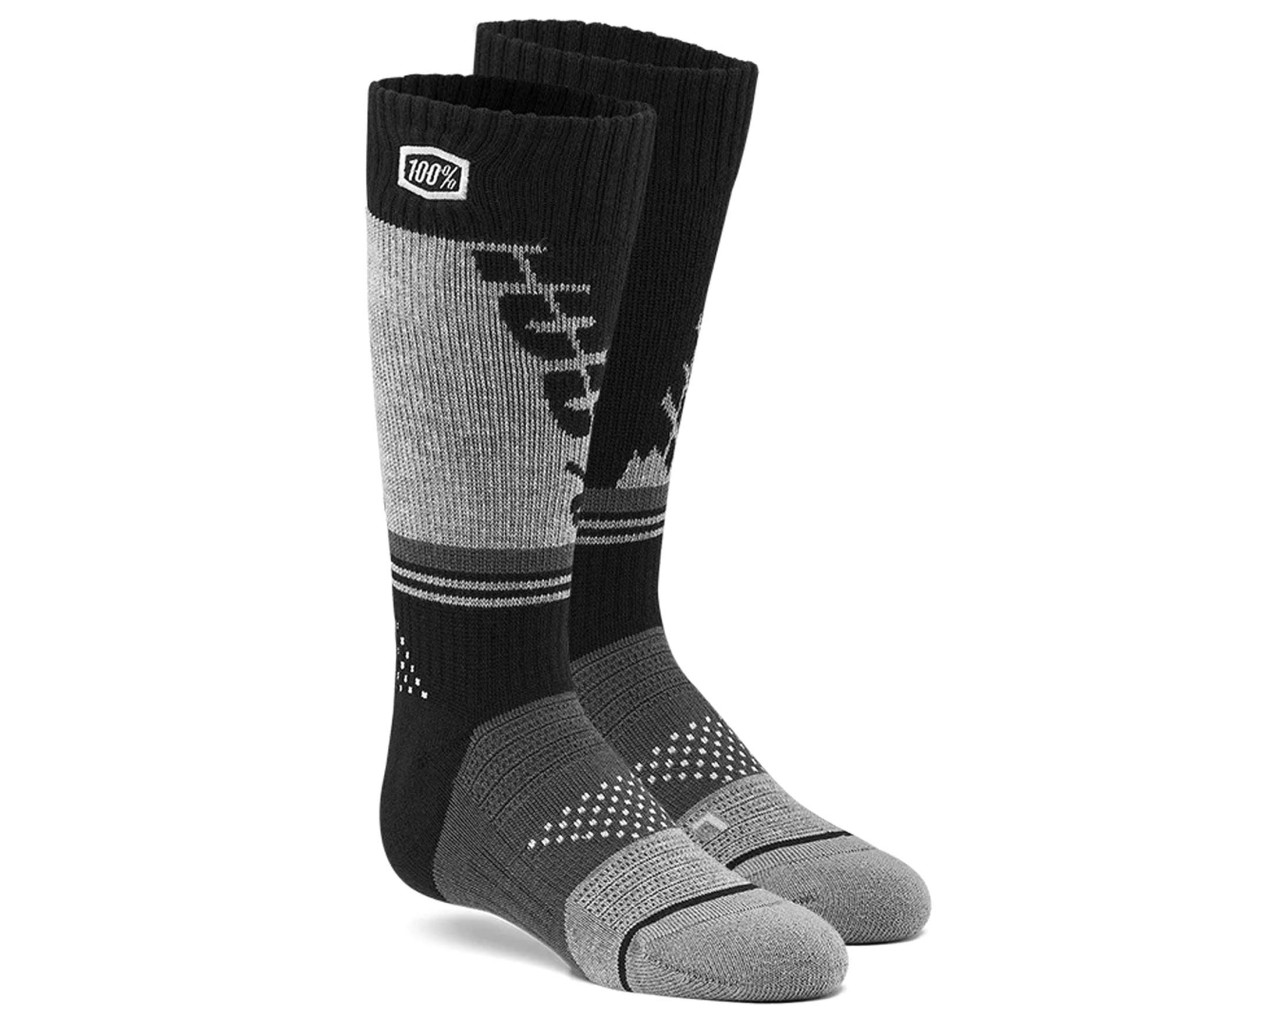 100% Torque Comfort Moto Socken | black-grey